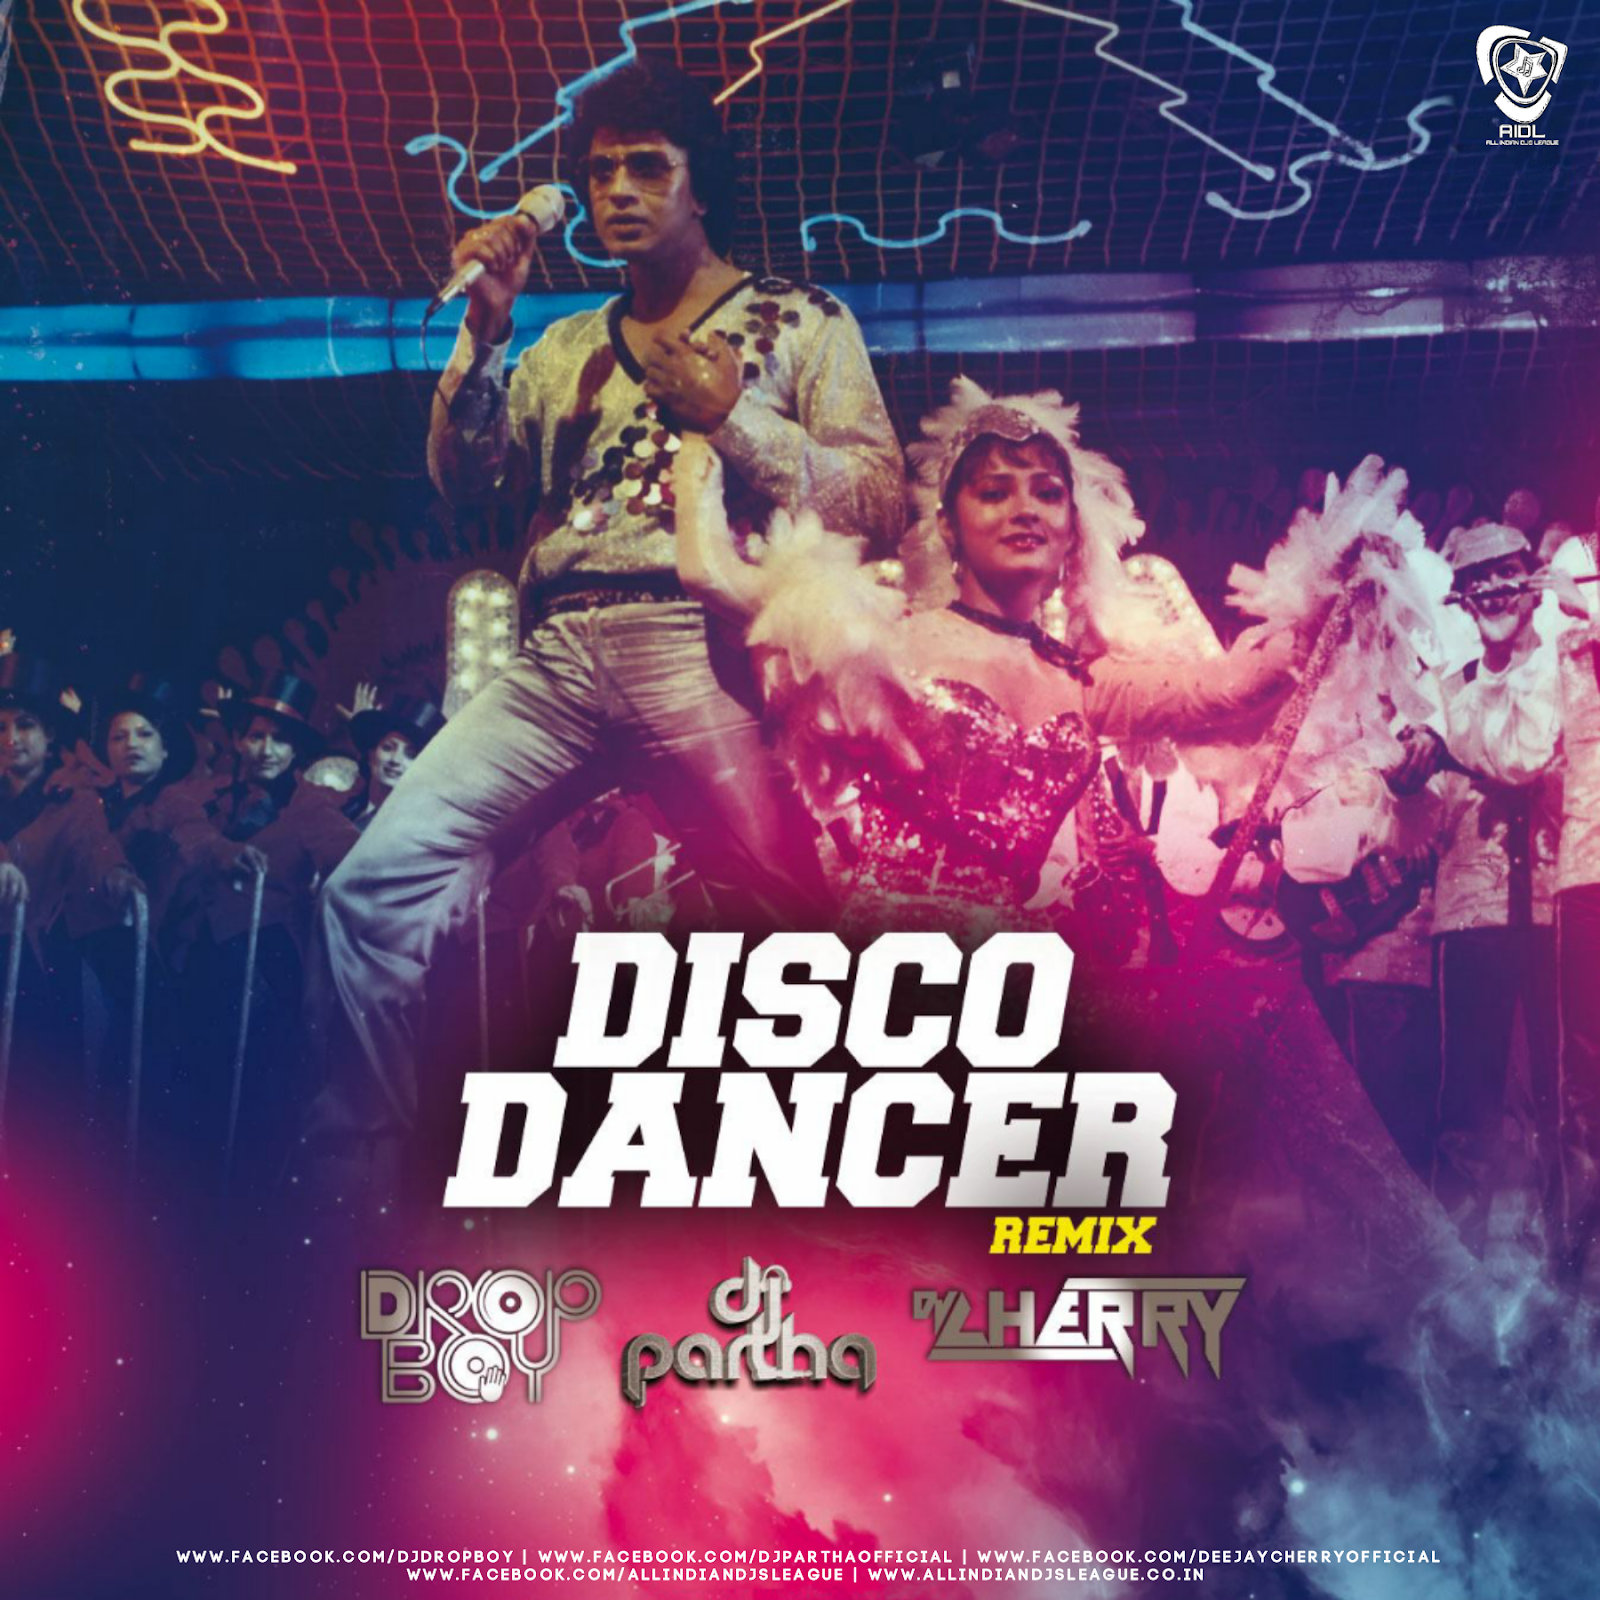 Танцор диско. Диско денсер. «Танцор диско» / Disco Dancer. Танцовщица диско. Disco remixes mp3